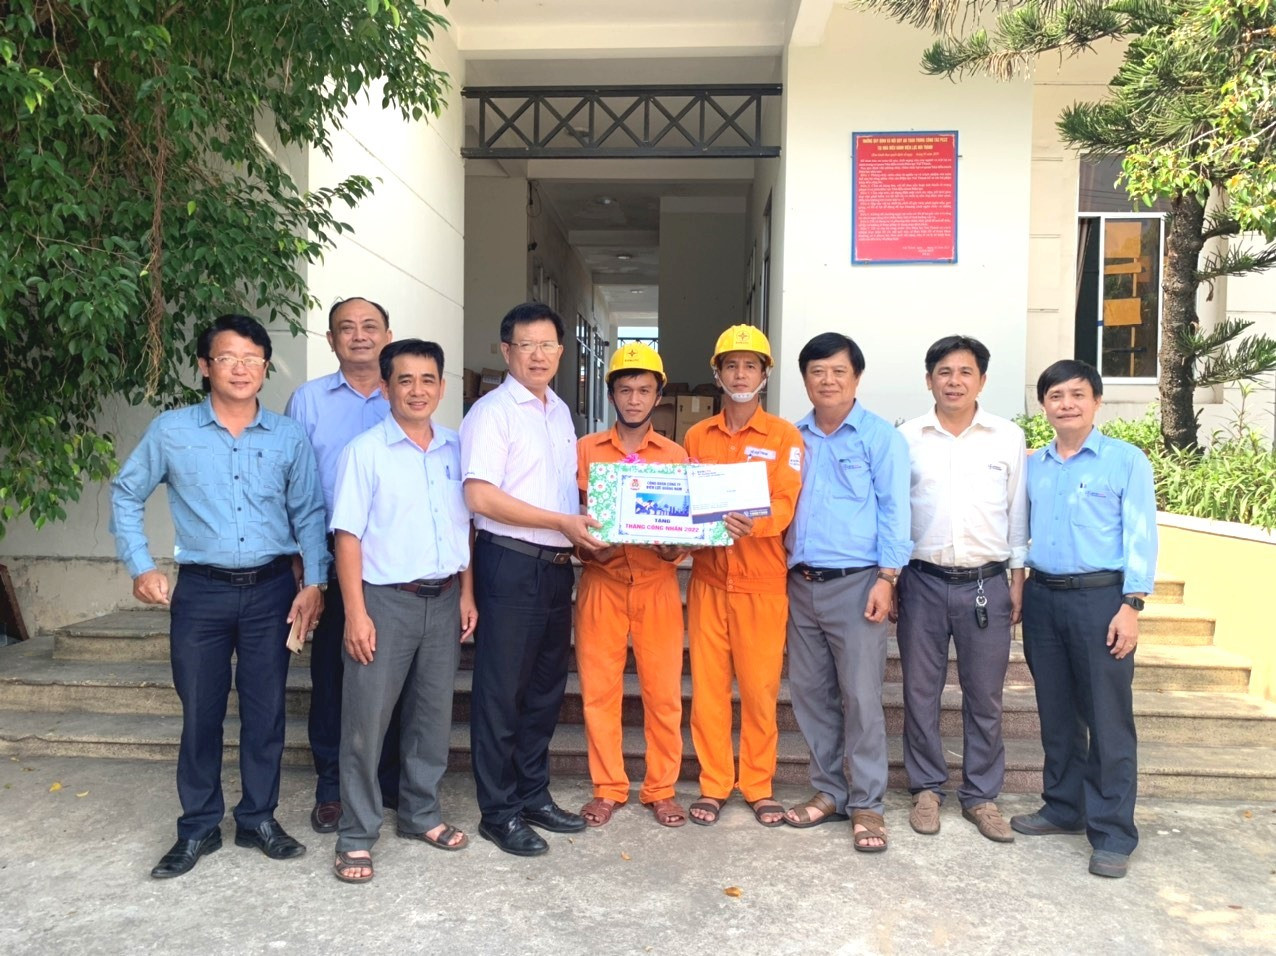 Giám đốc Công ty Điện lực Quảng Nam cùng đoàn công tác đã đến thăm và quà cho cán bộ công nhân viên Điện lực Núi Thành